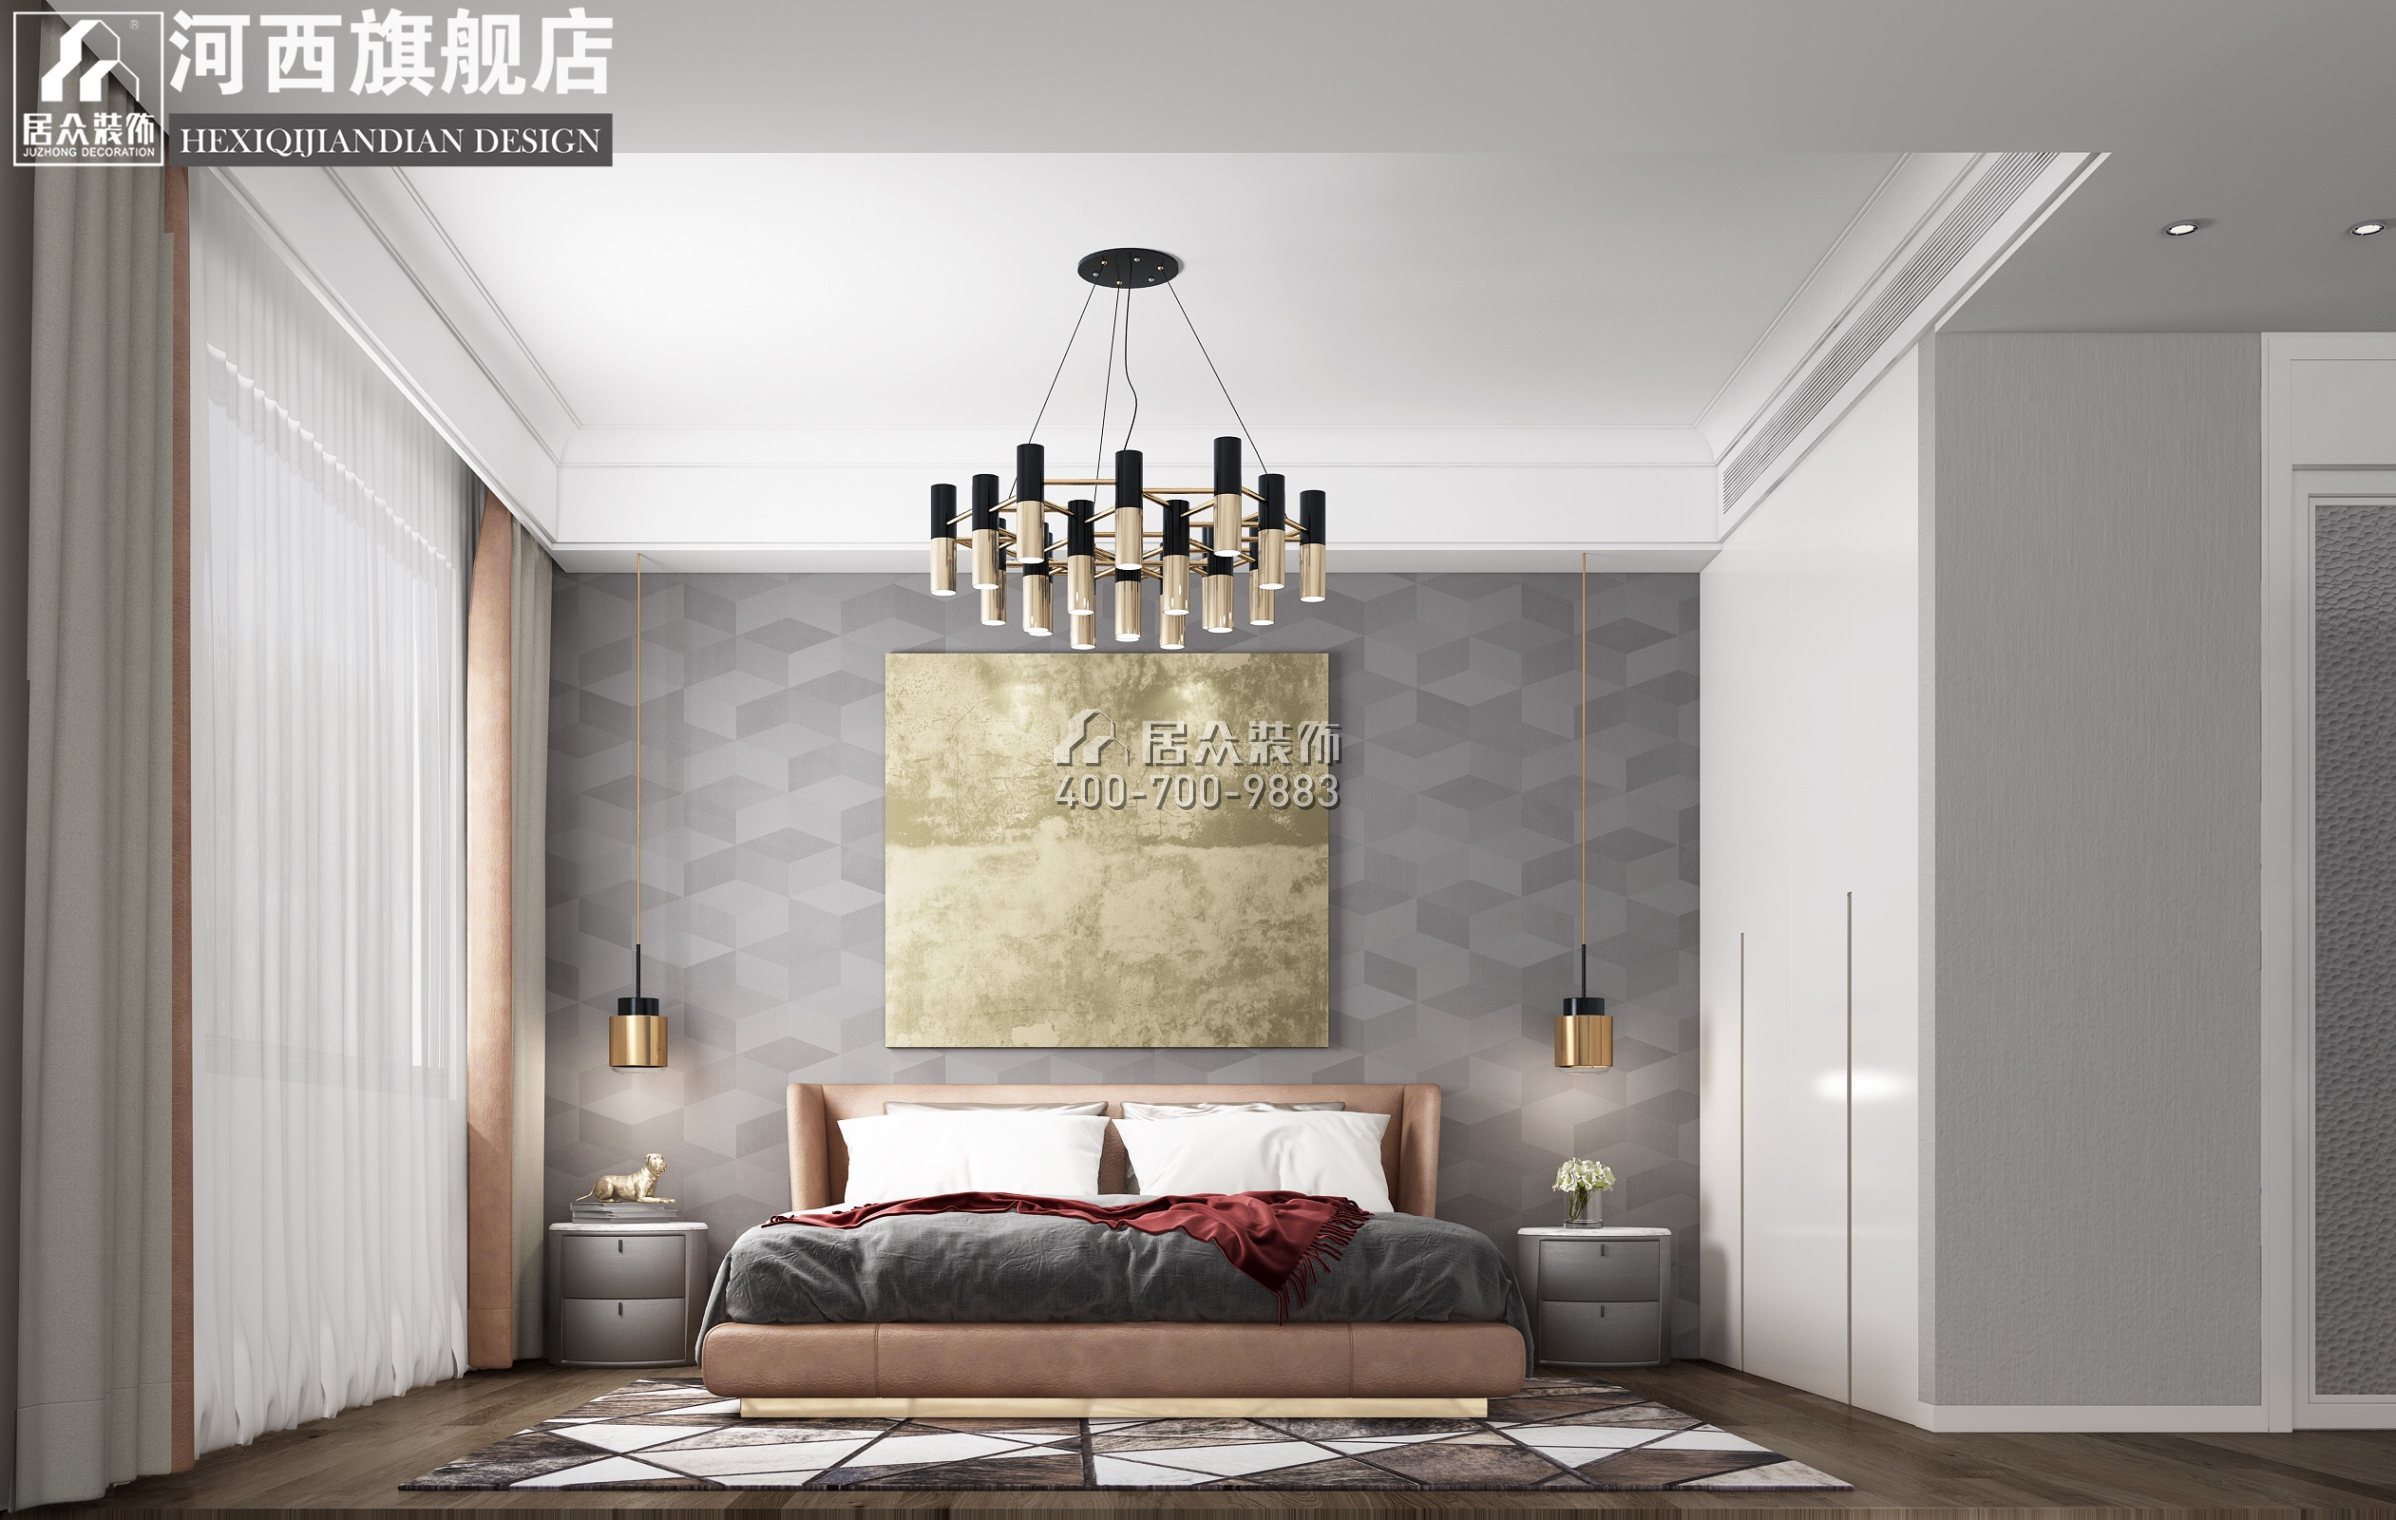 澳海澜庭248平方米现代简约风格复式户型卧室装修效果图